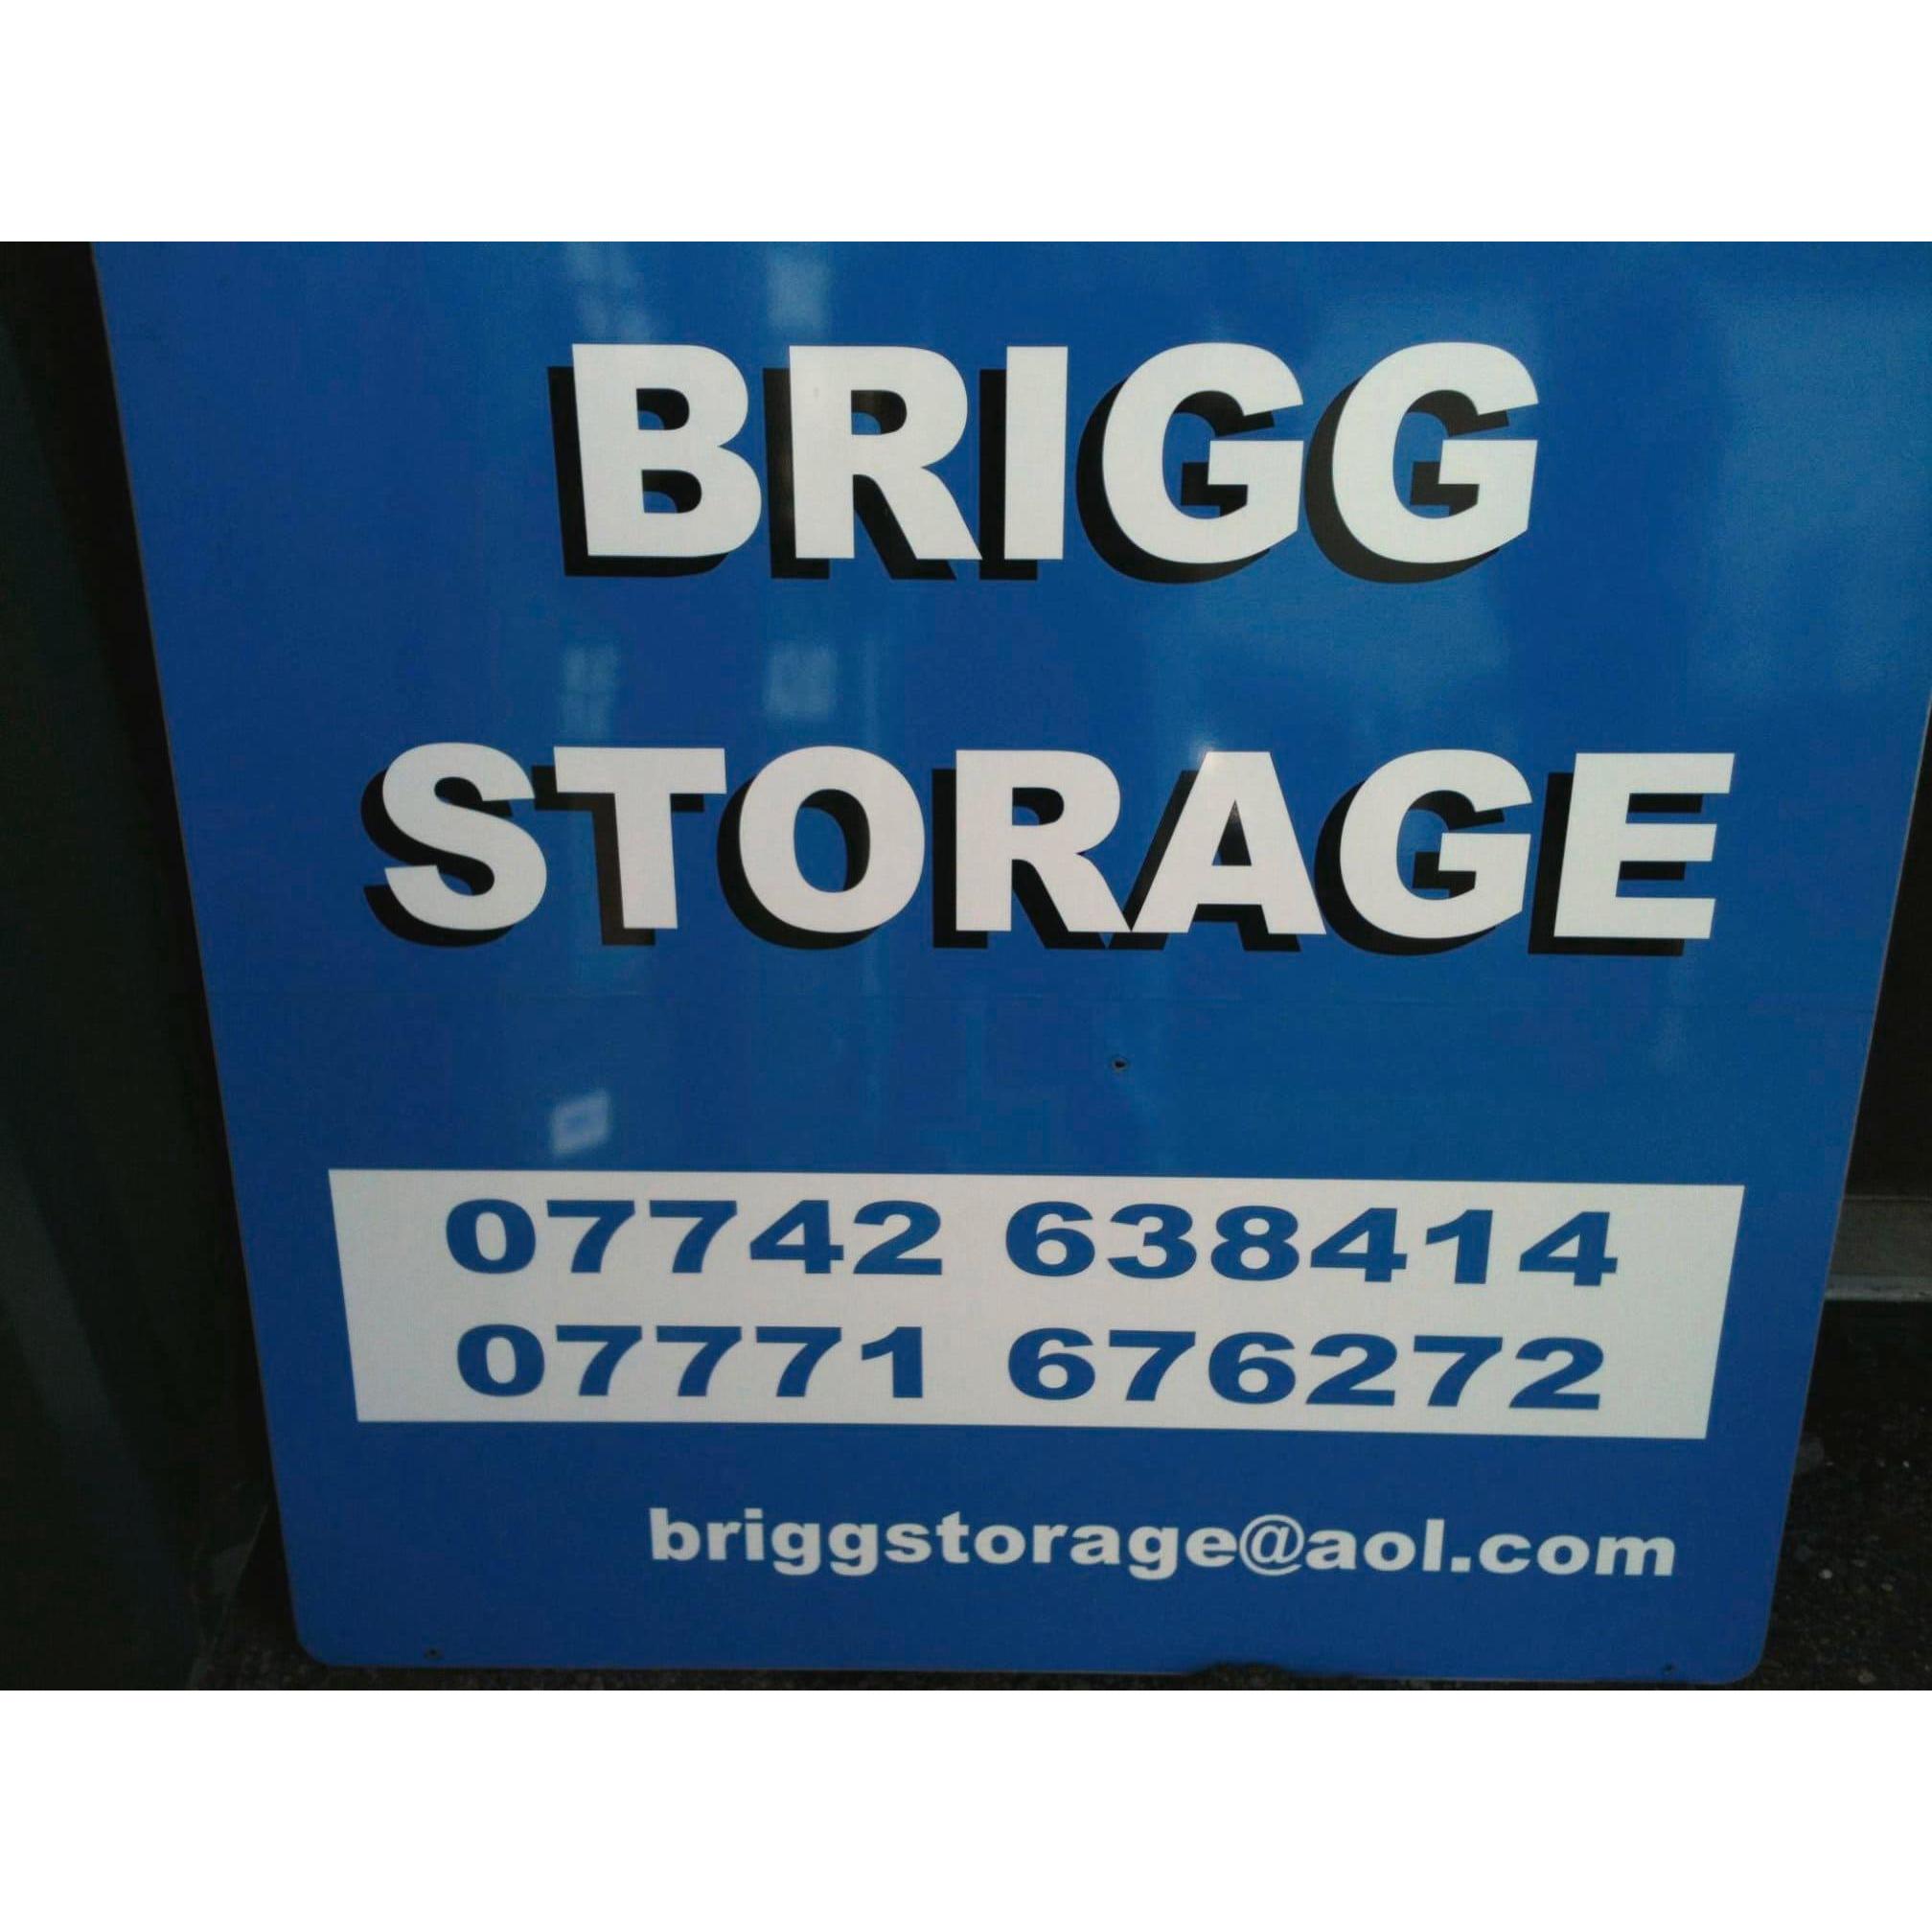 LOGO Brigg Storage Brigg 07742 638414